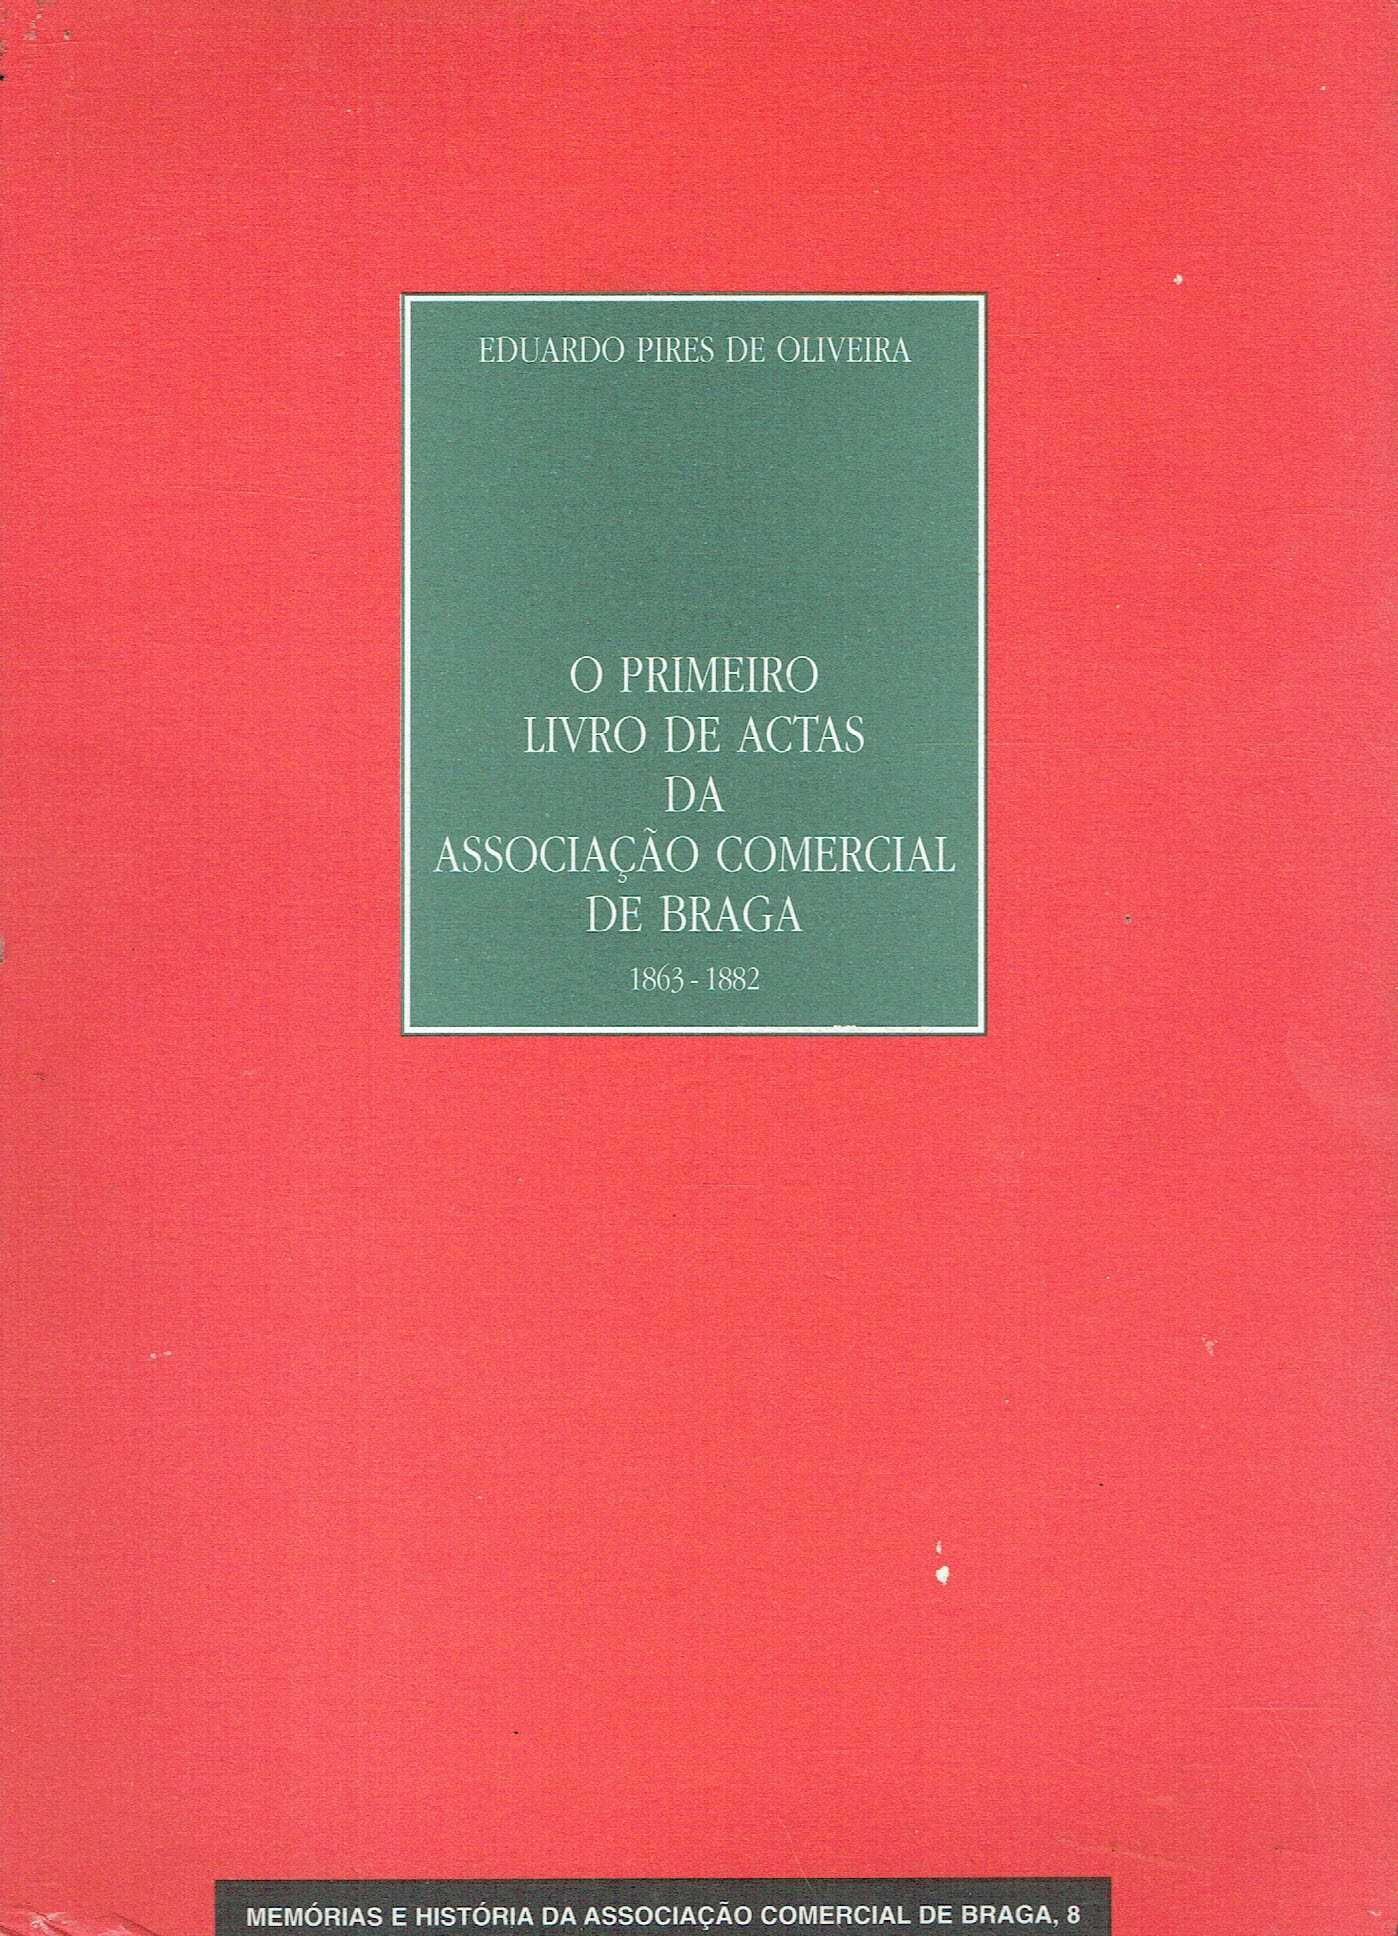 878
O primeiro livro de Atas da Associação Comercial de Braga